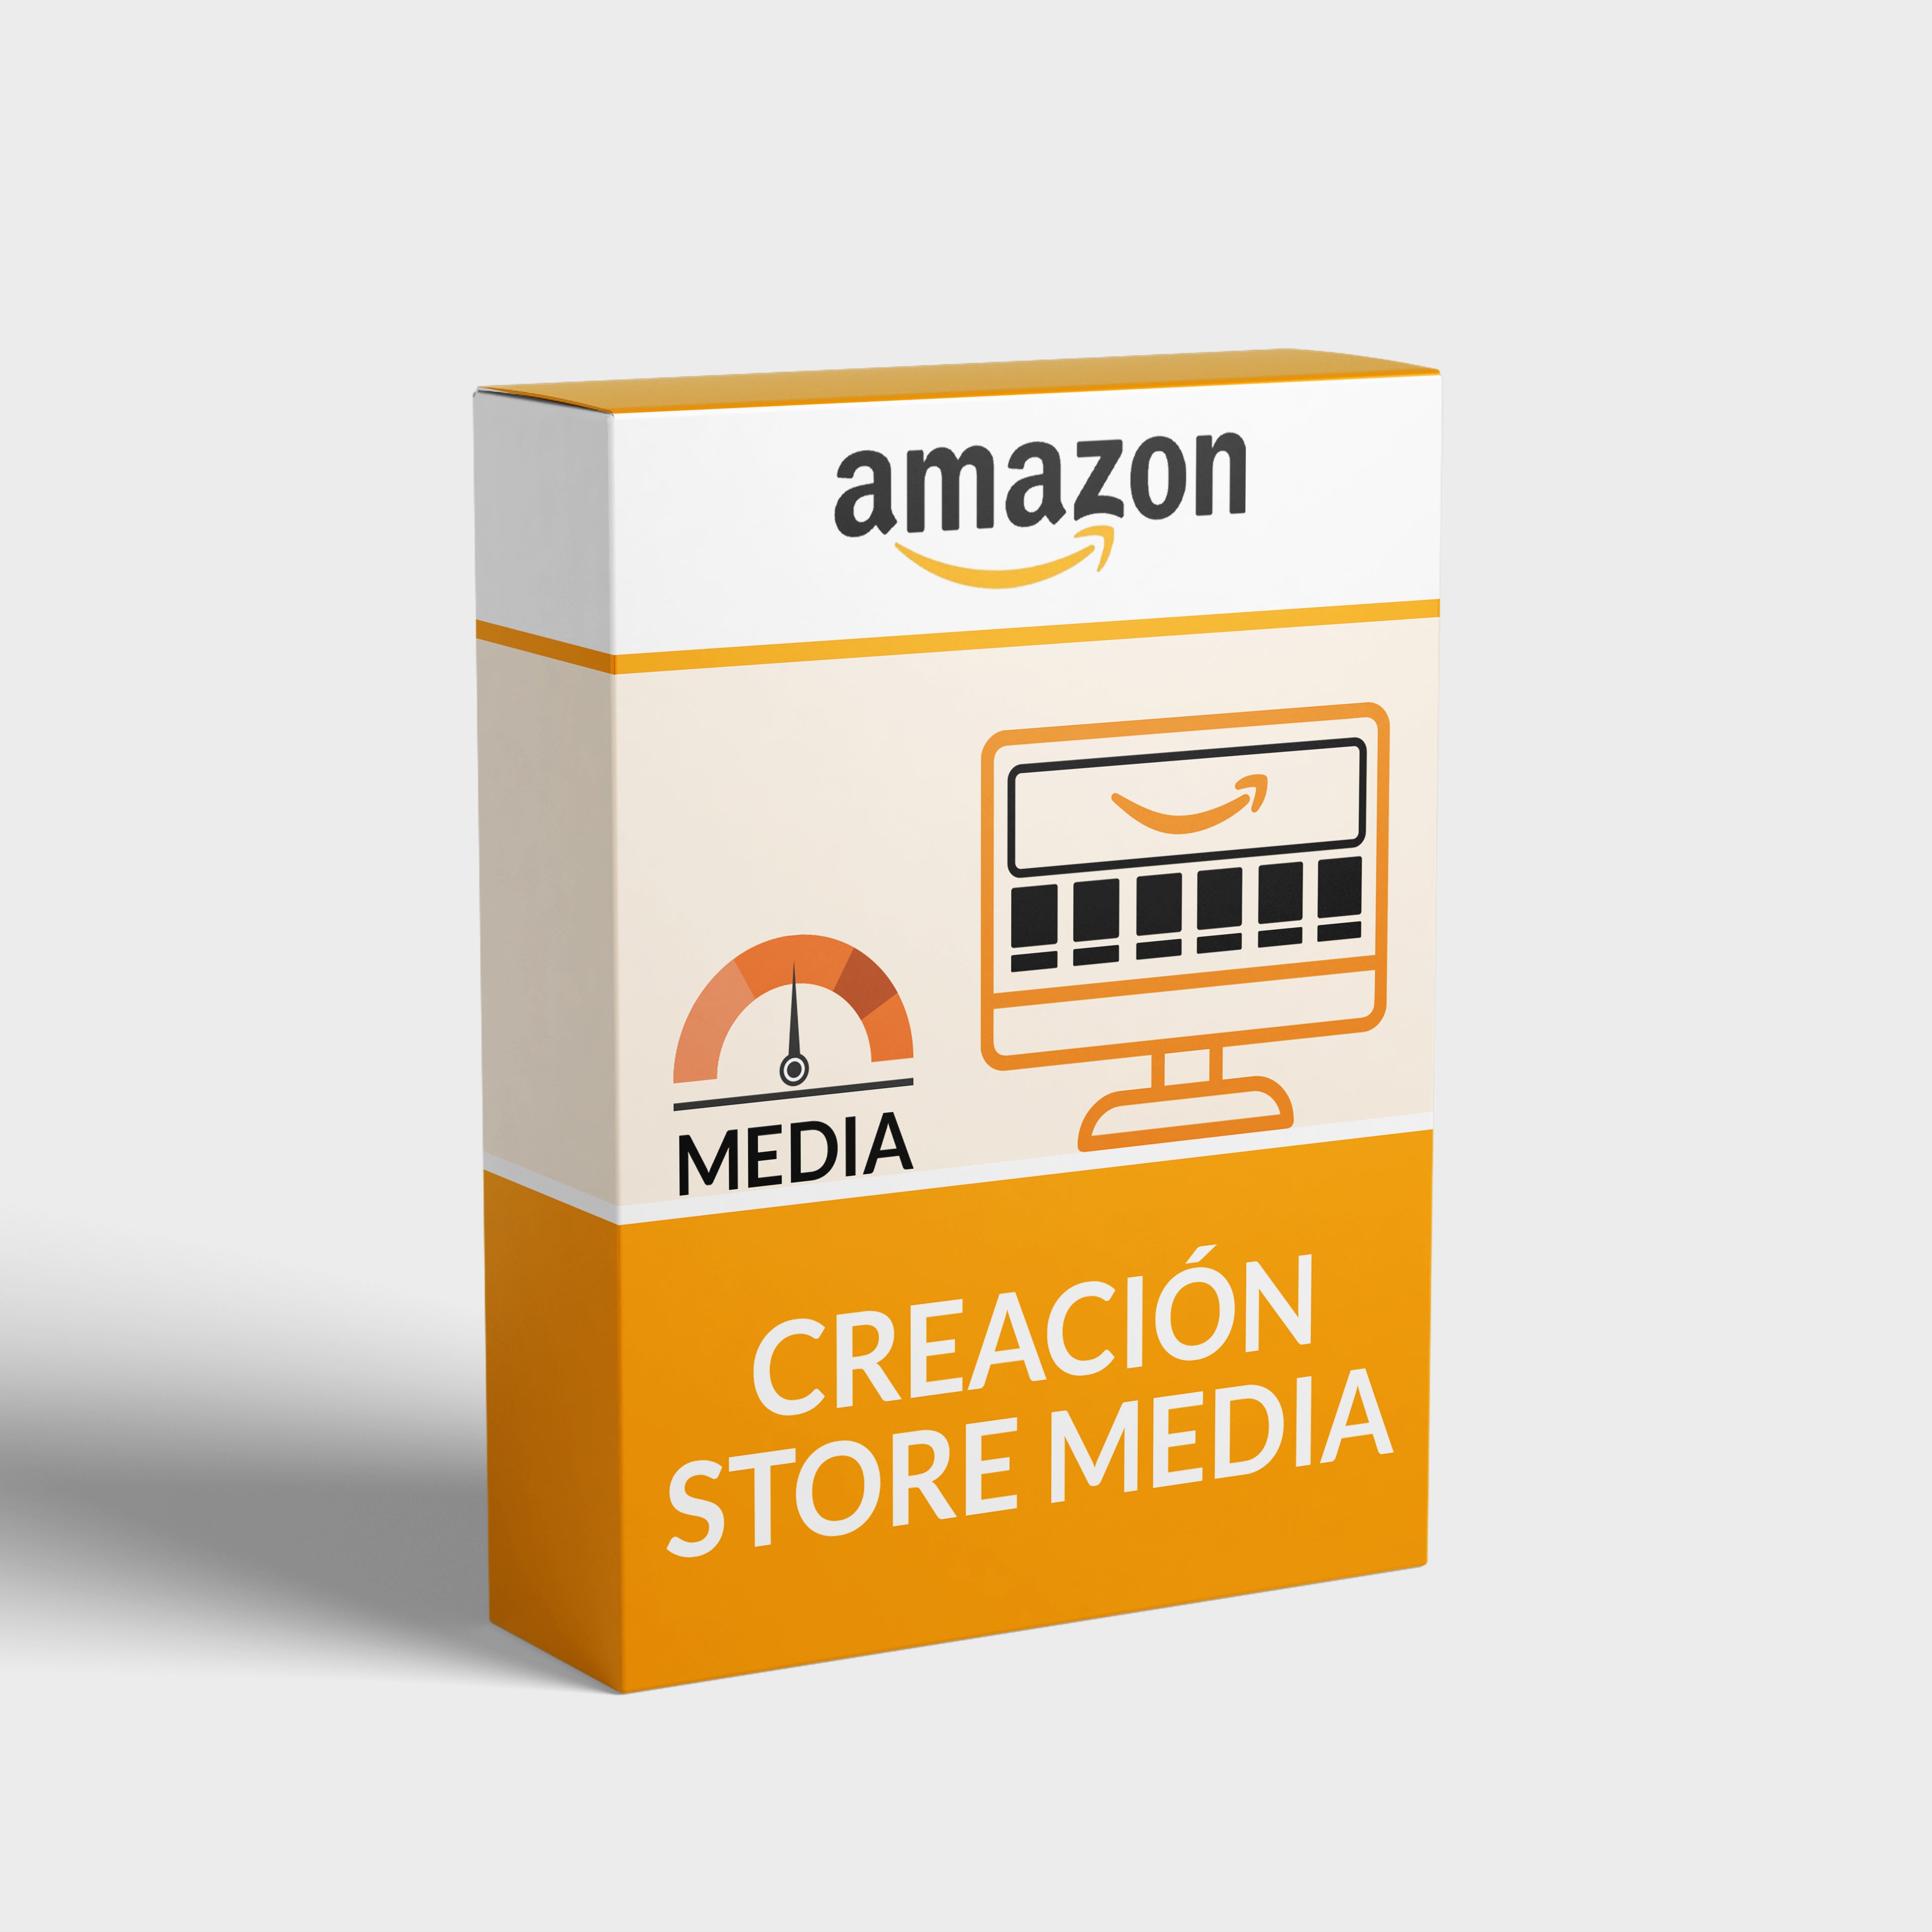 Creación store (tienda) media Amazon